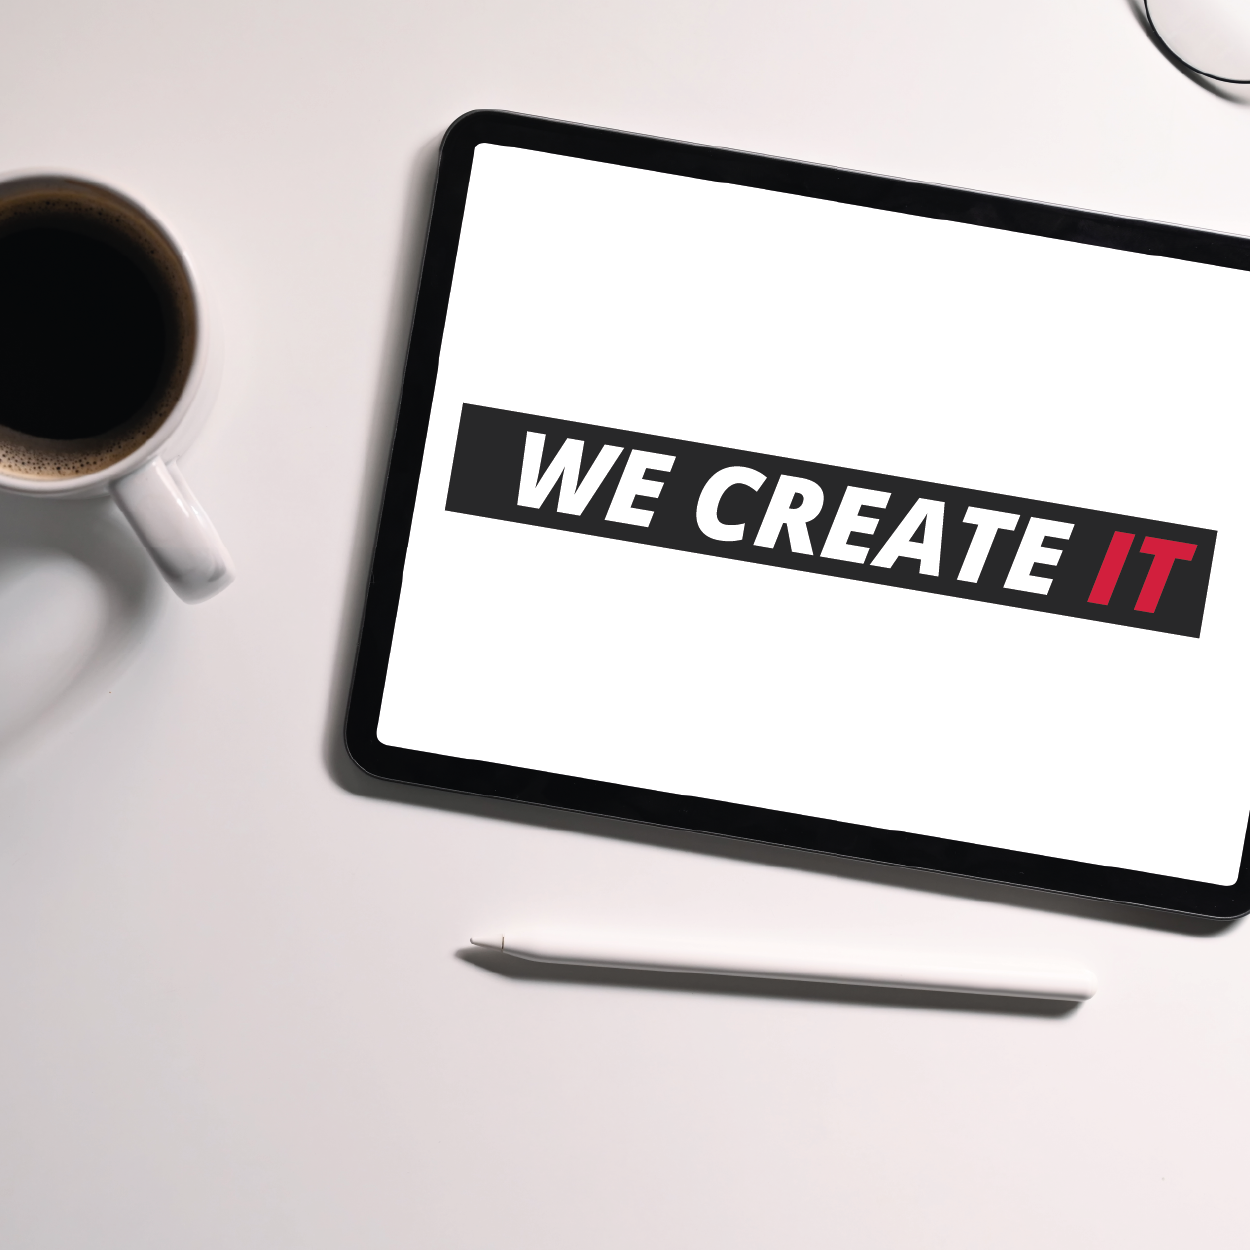 Tablet mit Schriftzug "we create IT".